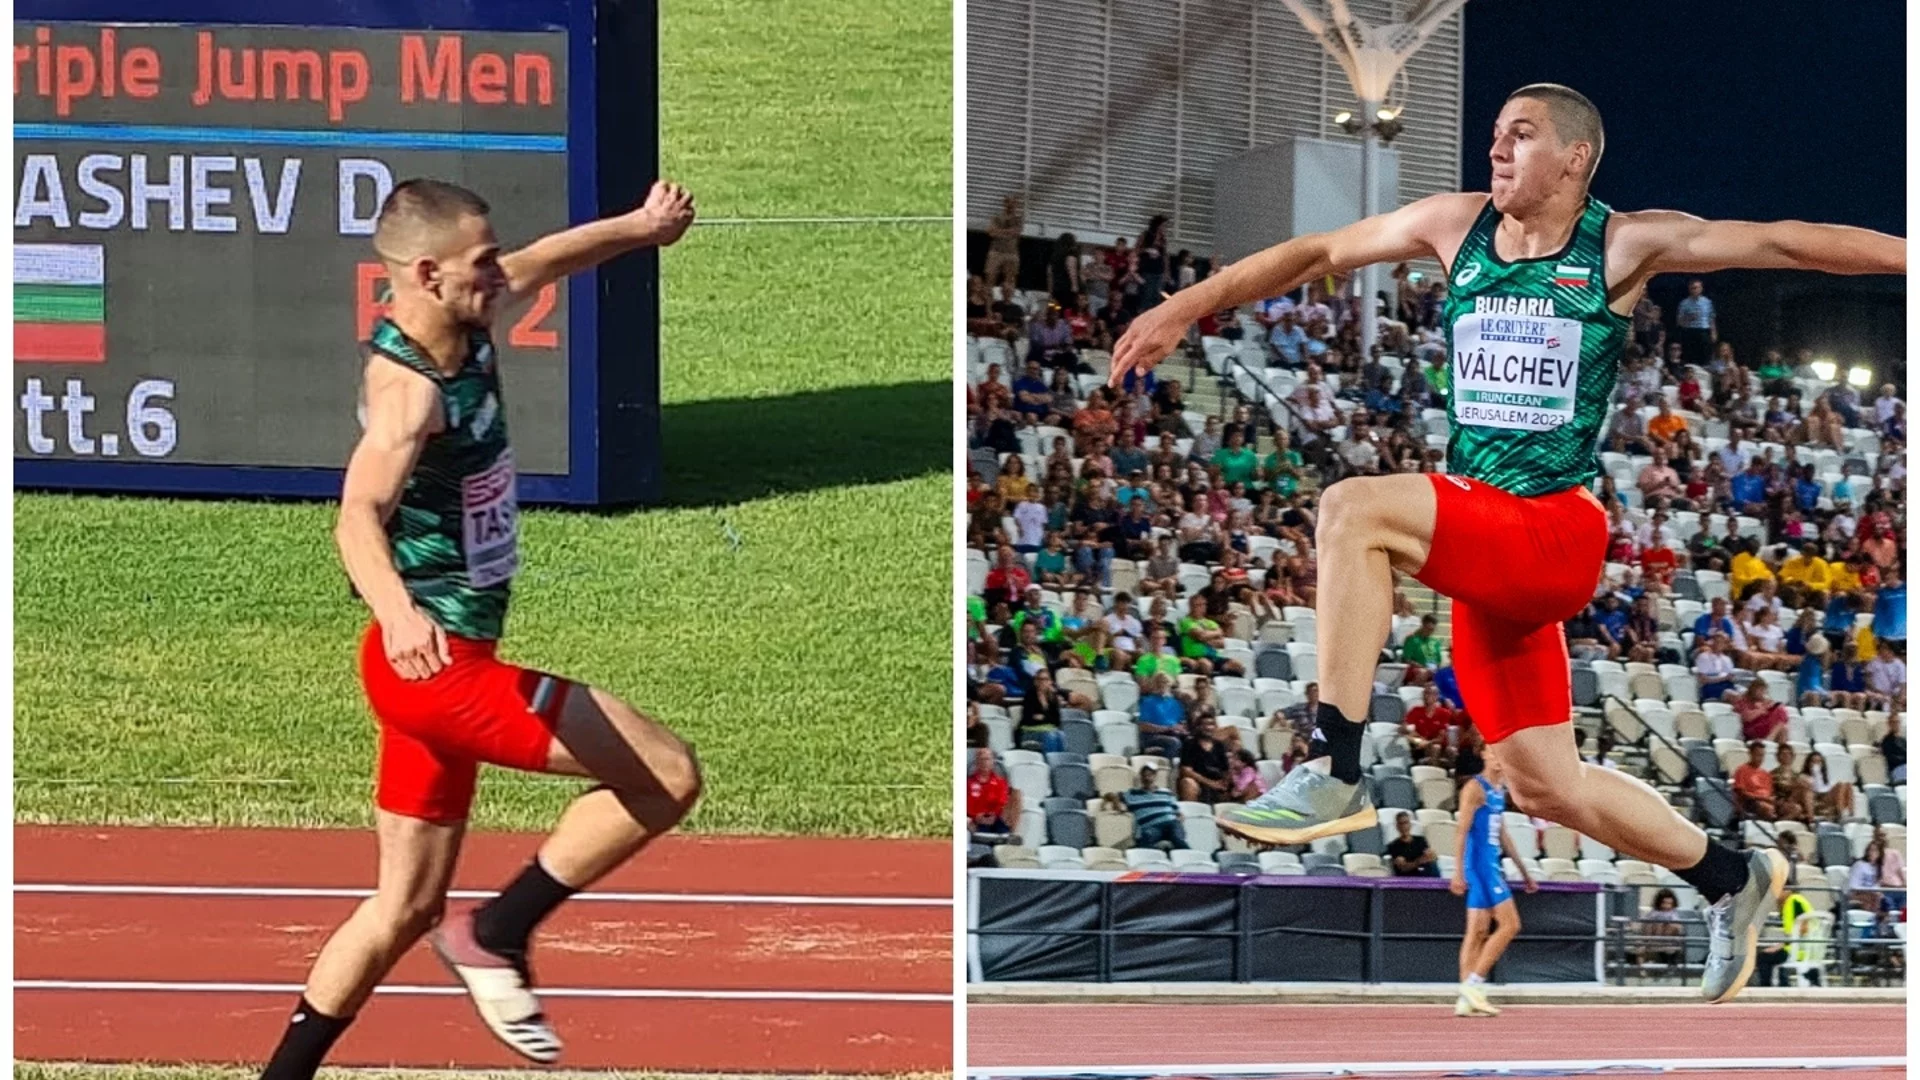 Лъчезар Вълчев и Димитър Ташев приключиха участието си на Европейското по лека атлетика